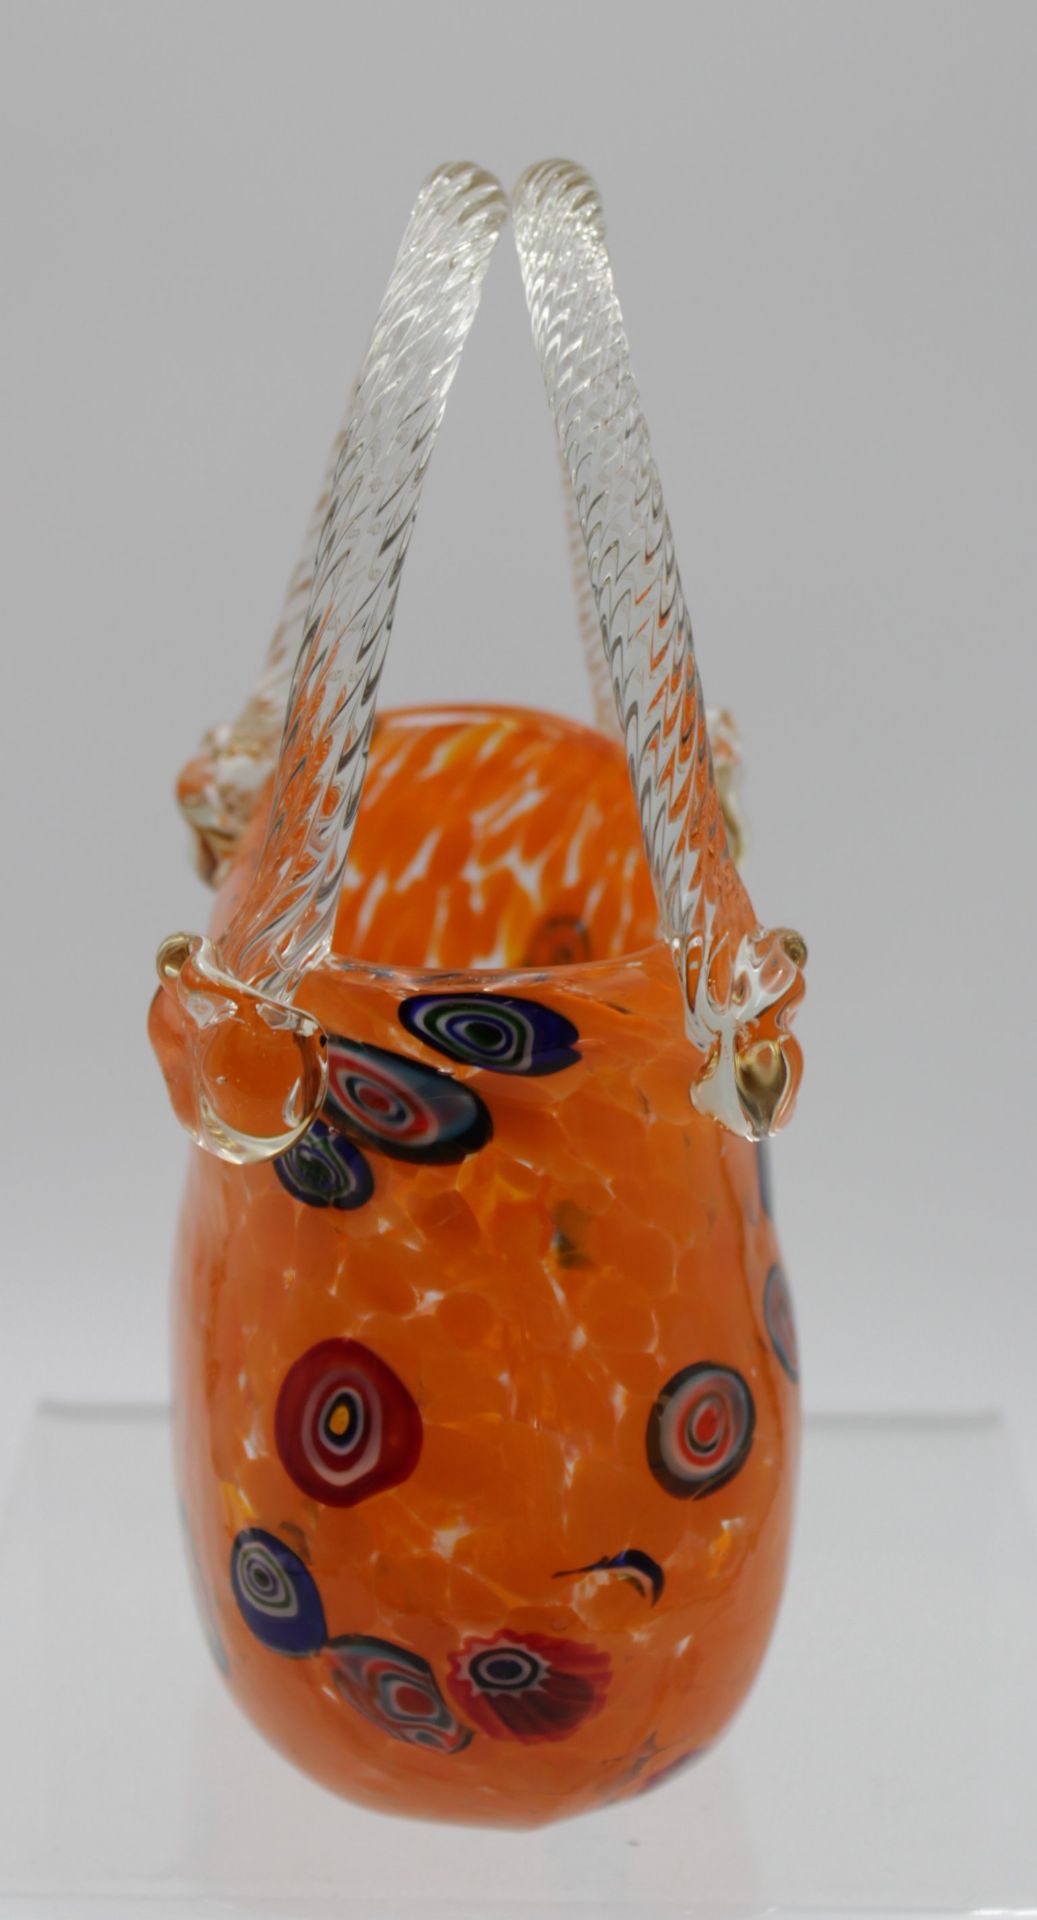 Vase in Taschenform, wohl Murano, farbige Einschmelzungen, ca. H-20cm B-14cm. - Bild 3 aus 5